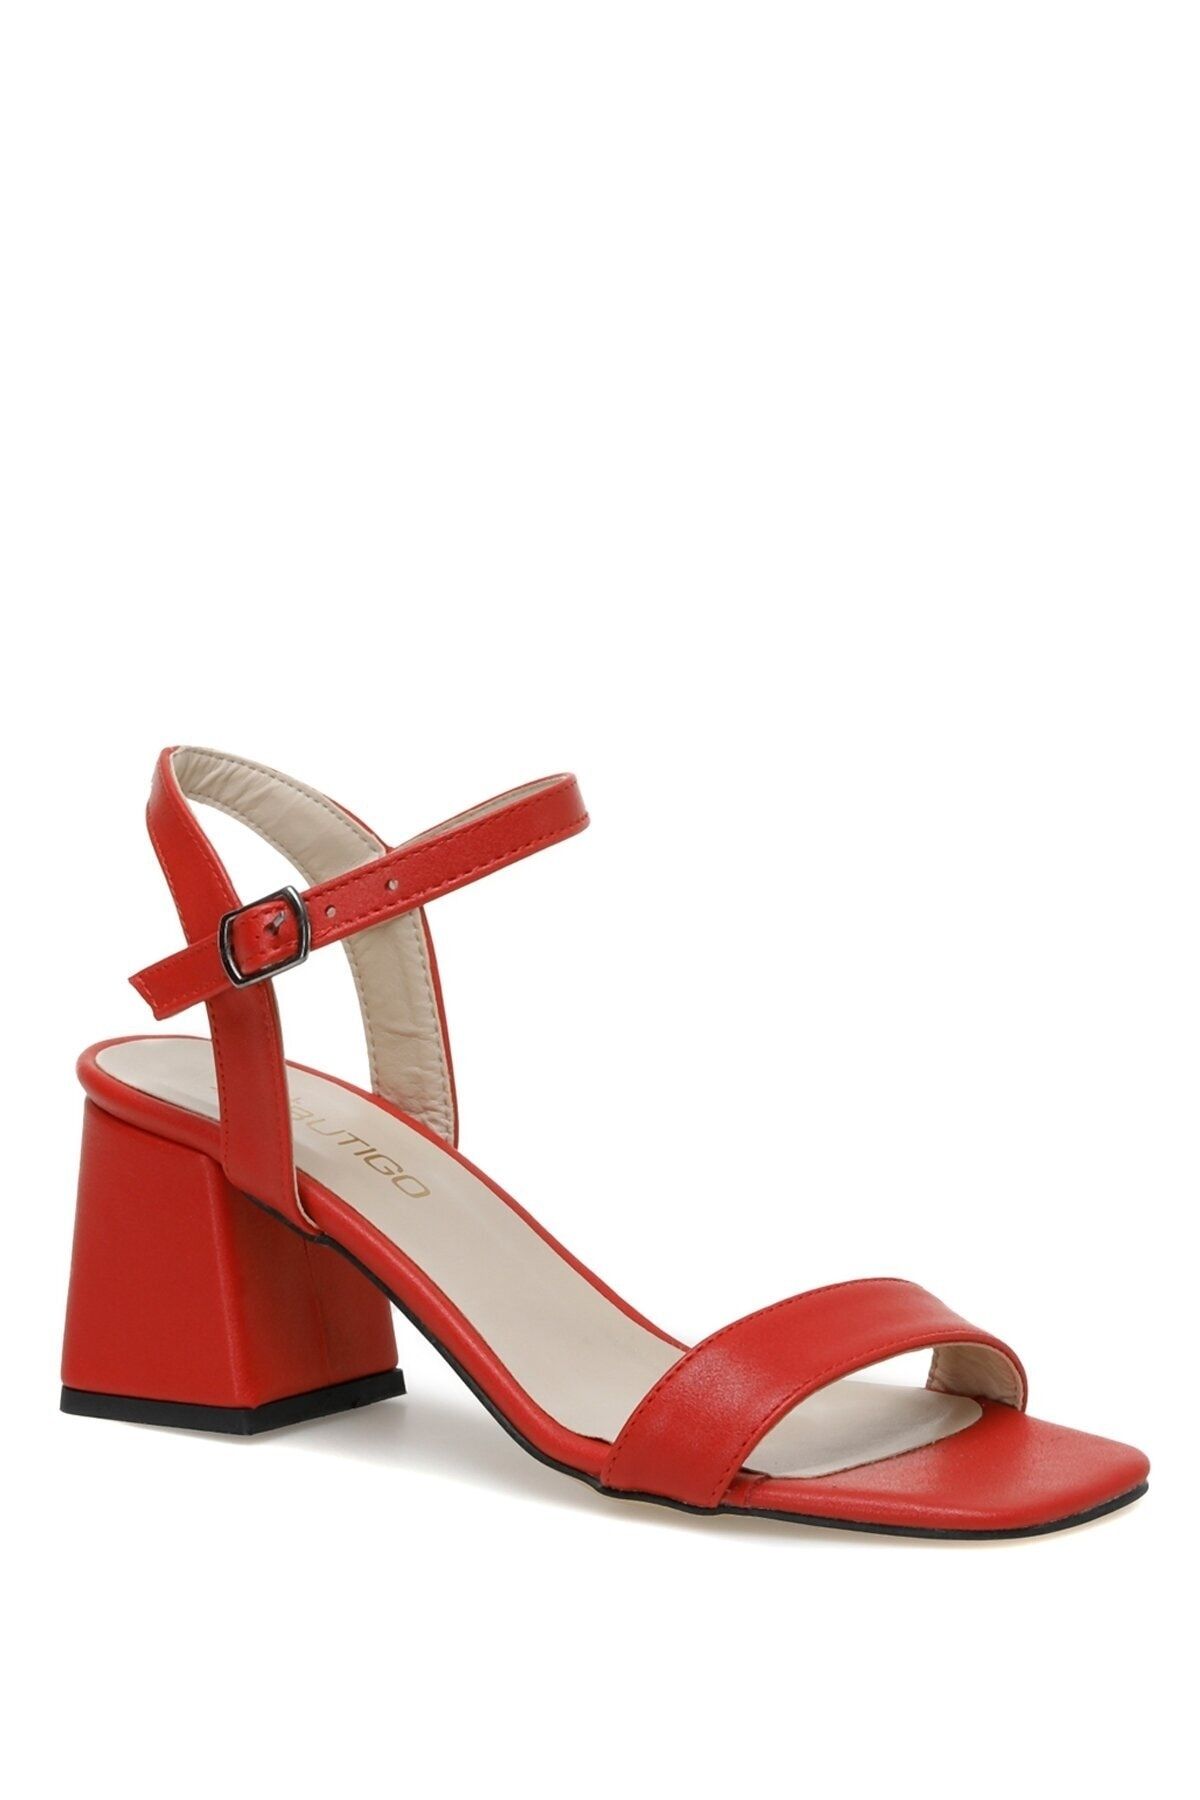 Butigo Krısy 3fx Kırmızı Kadın Topuklu Sandalet